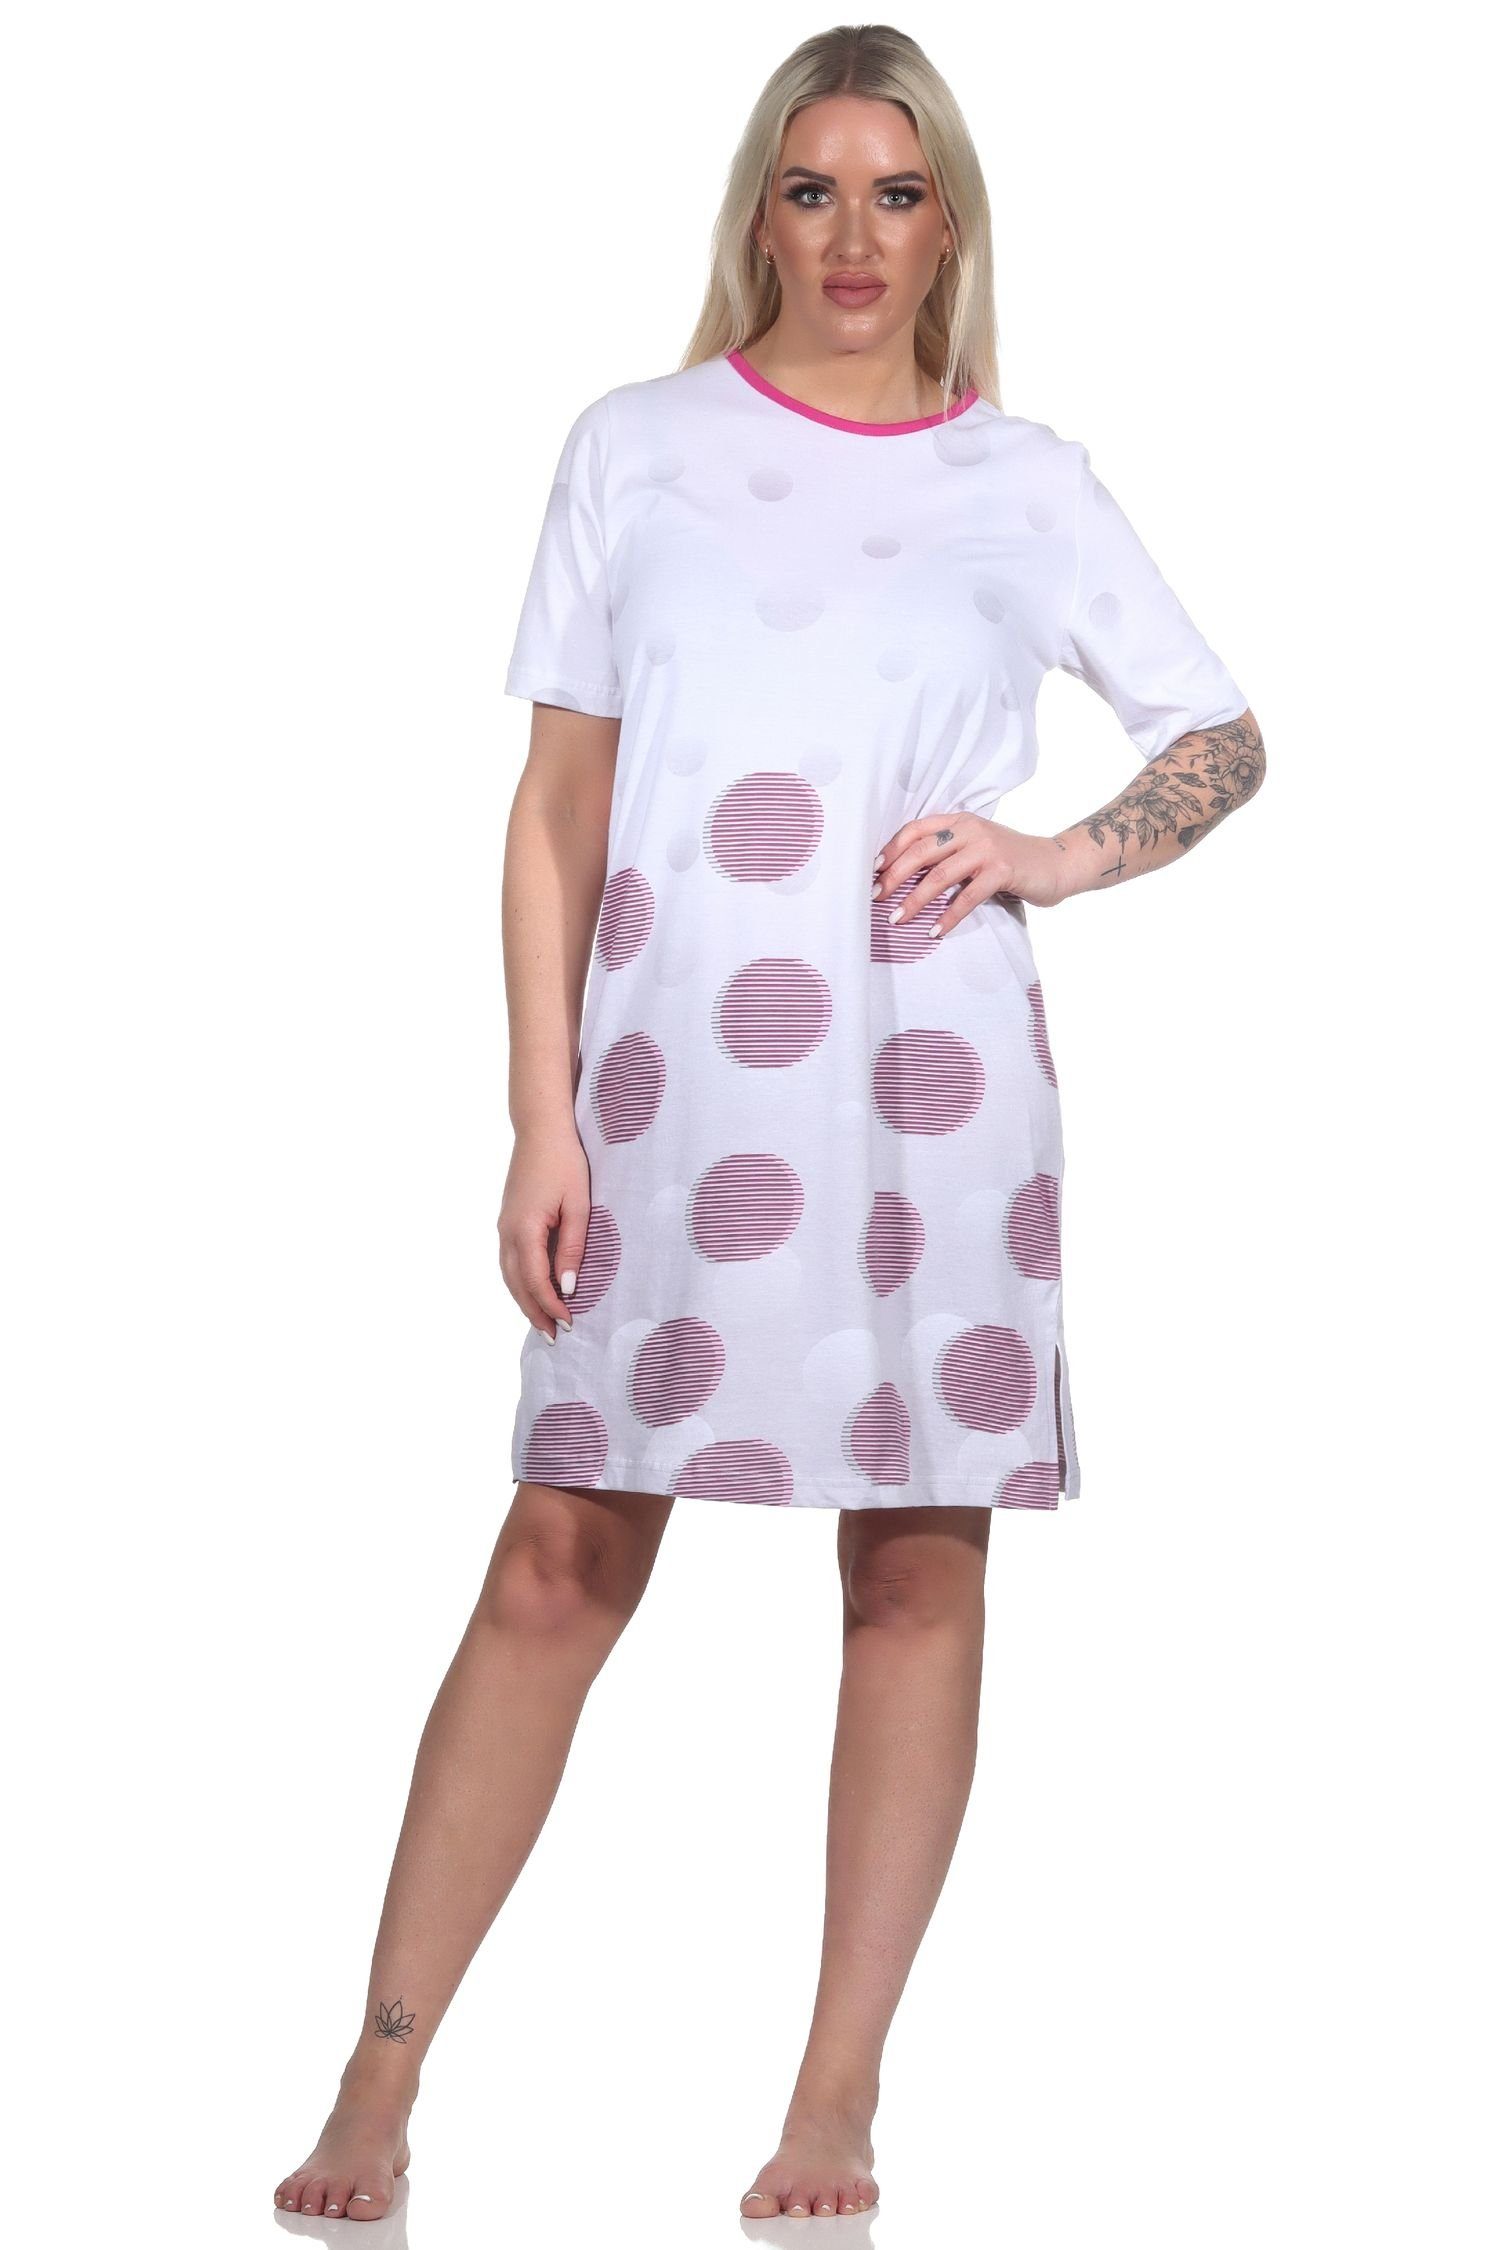 Normann Nachthemd Damen kurzarm Nachthemd in Tupfen-Punkte Optik - auch in Übergrössen pink